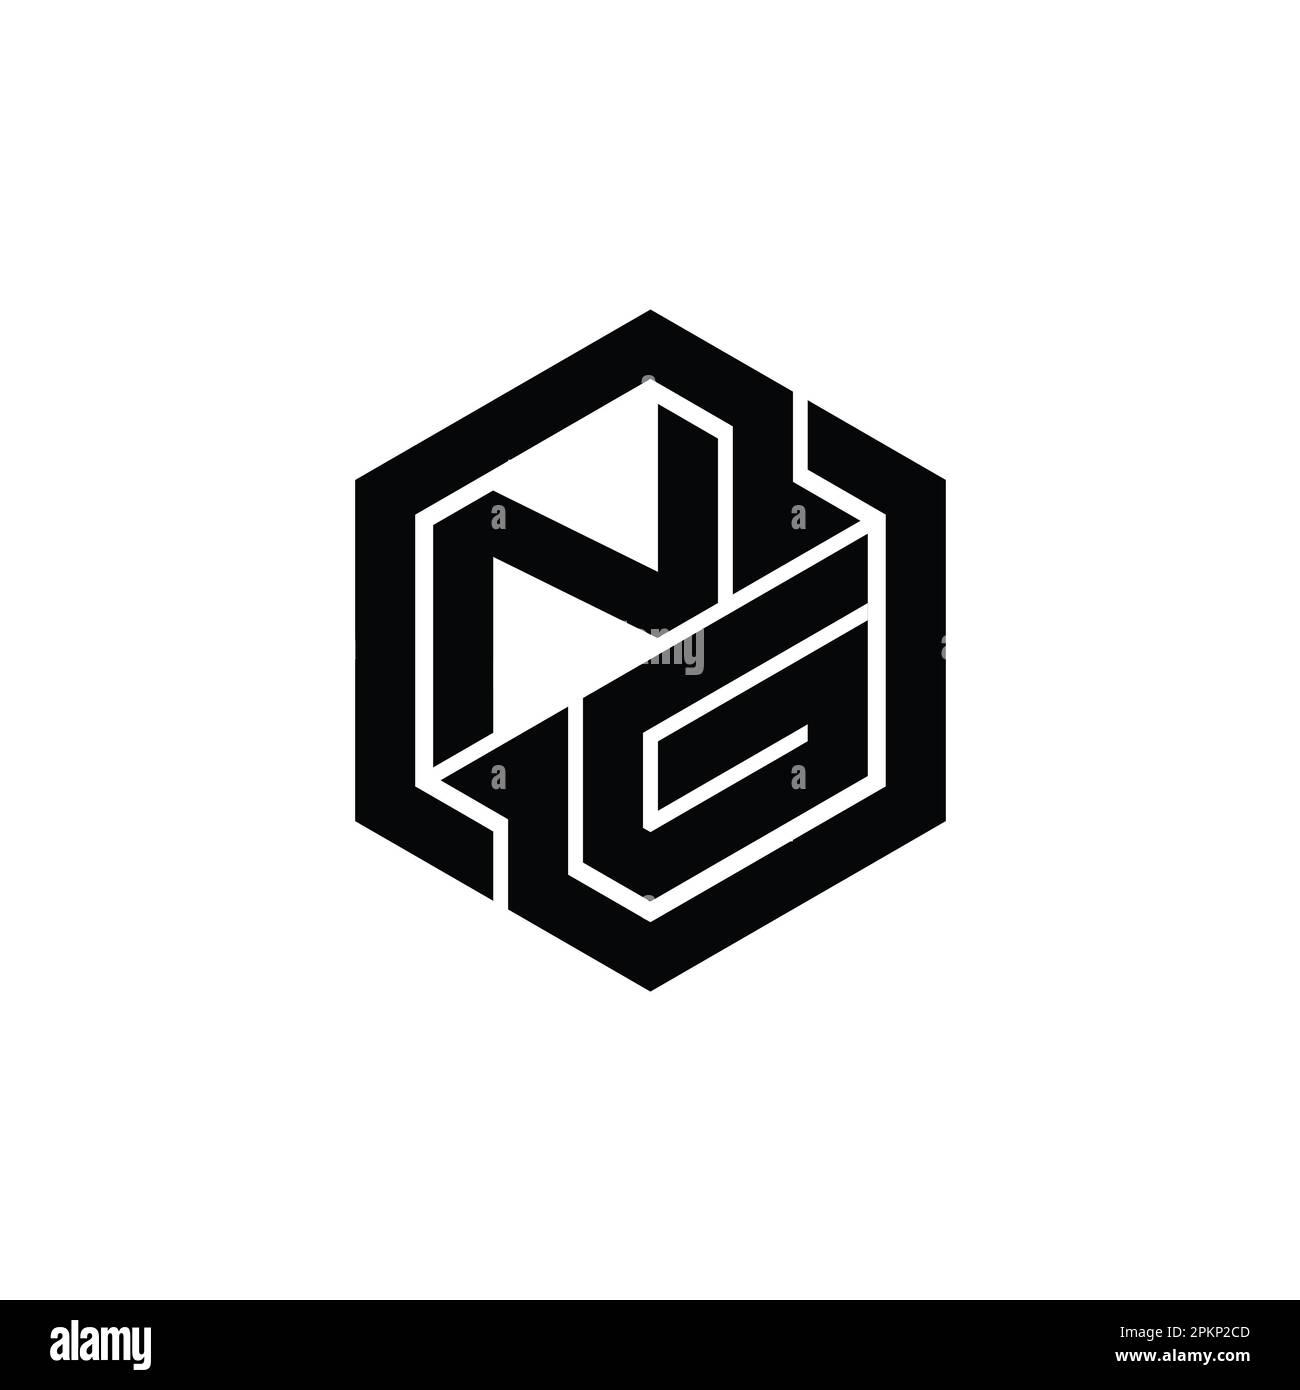 Monogram Logo Letter Modern Blue Light Gaming Design Geometric